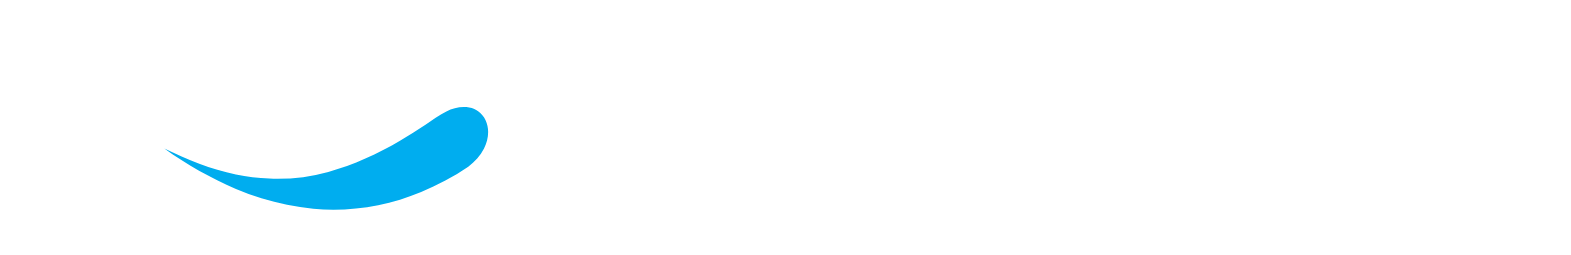 Sapiens logo large for dark backgrounds (transparent PNG)